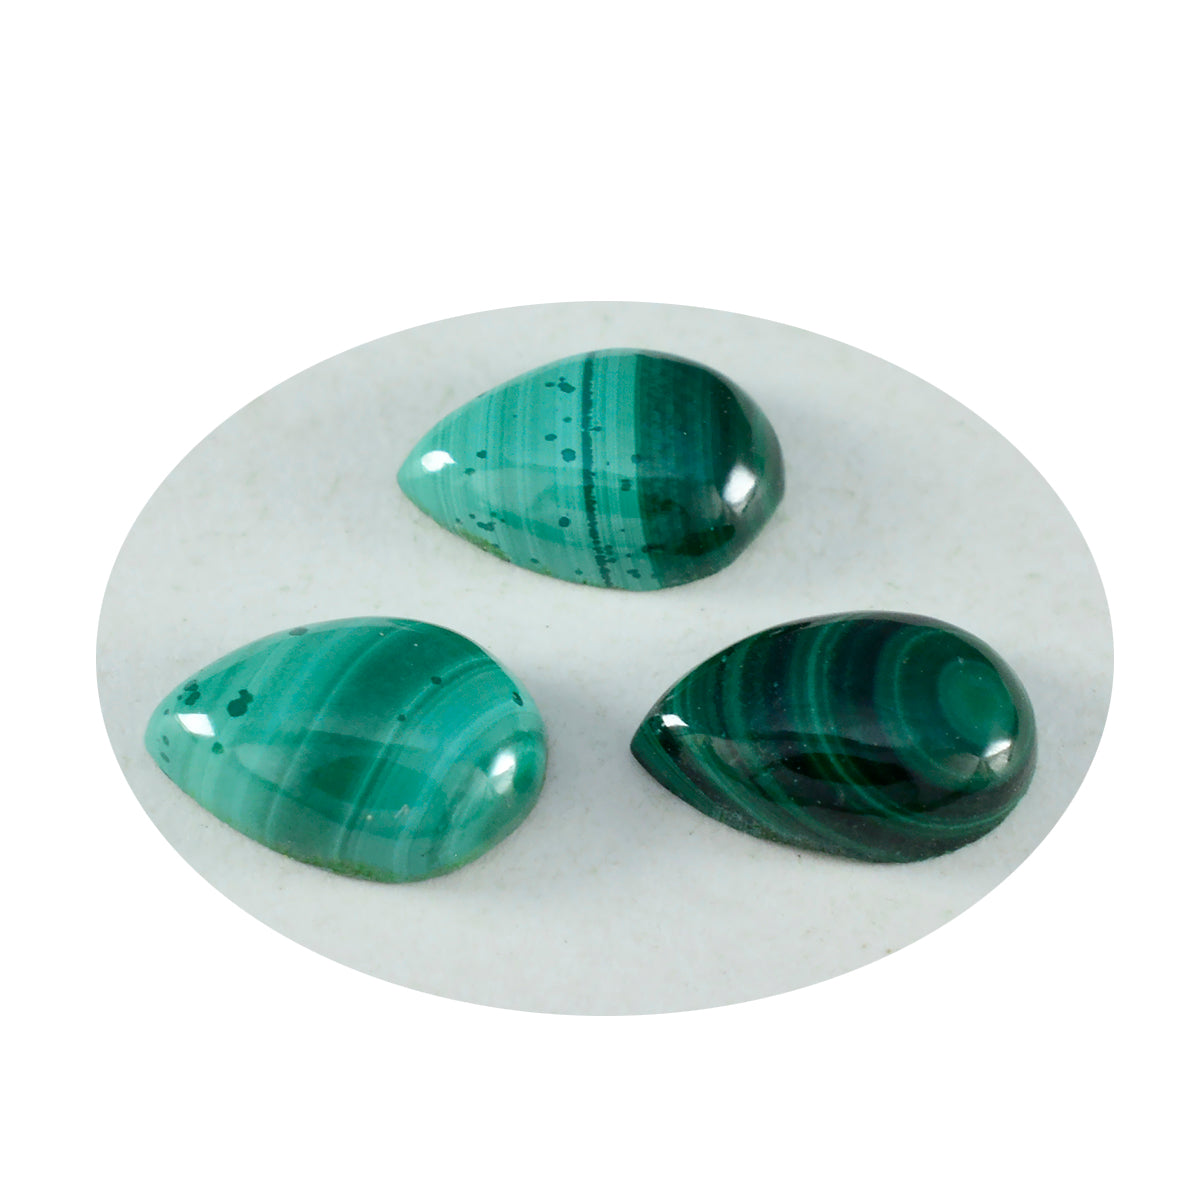 riyogems 1 шт. зеленый малахит кабошон 8x12 мм грушевидной формы красивое качество свободный камень